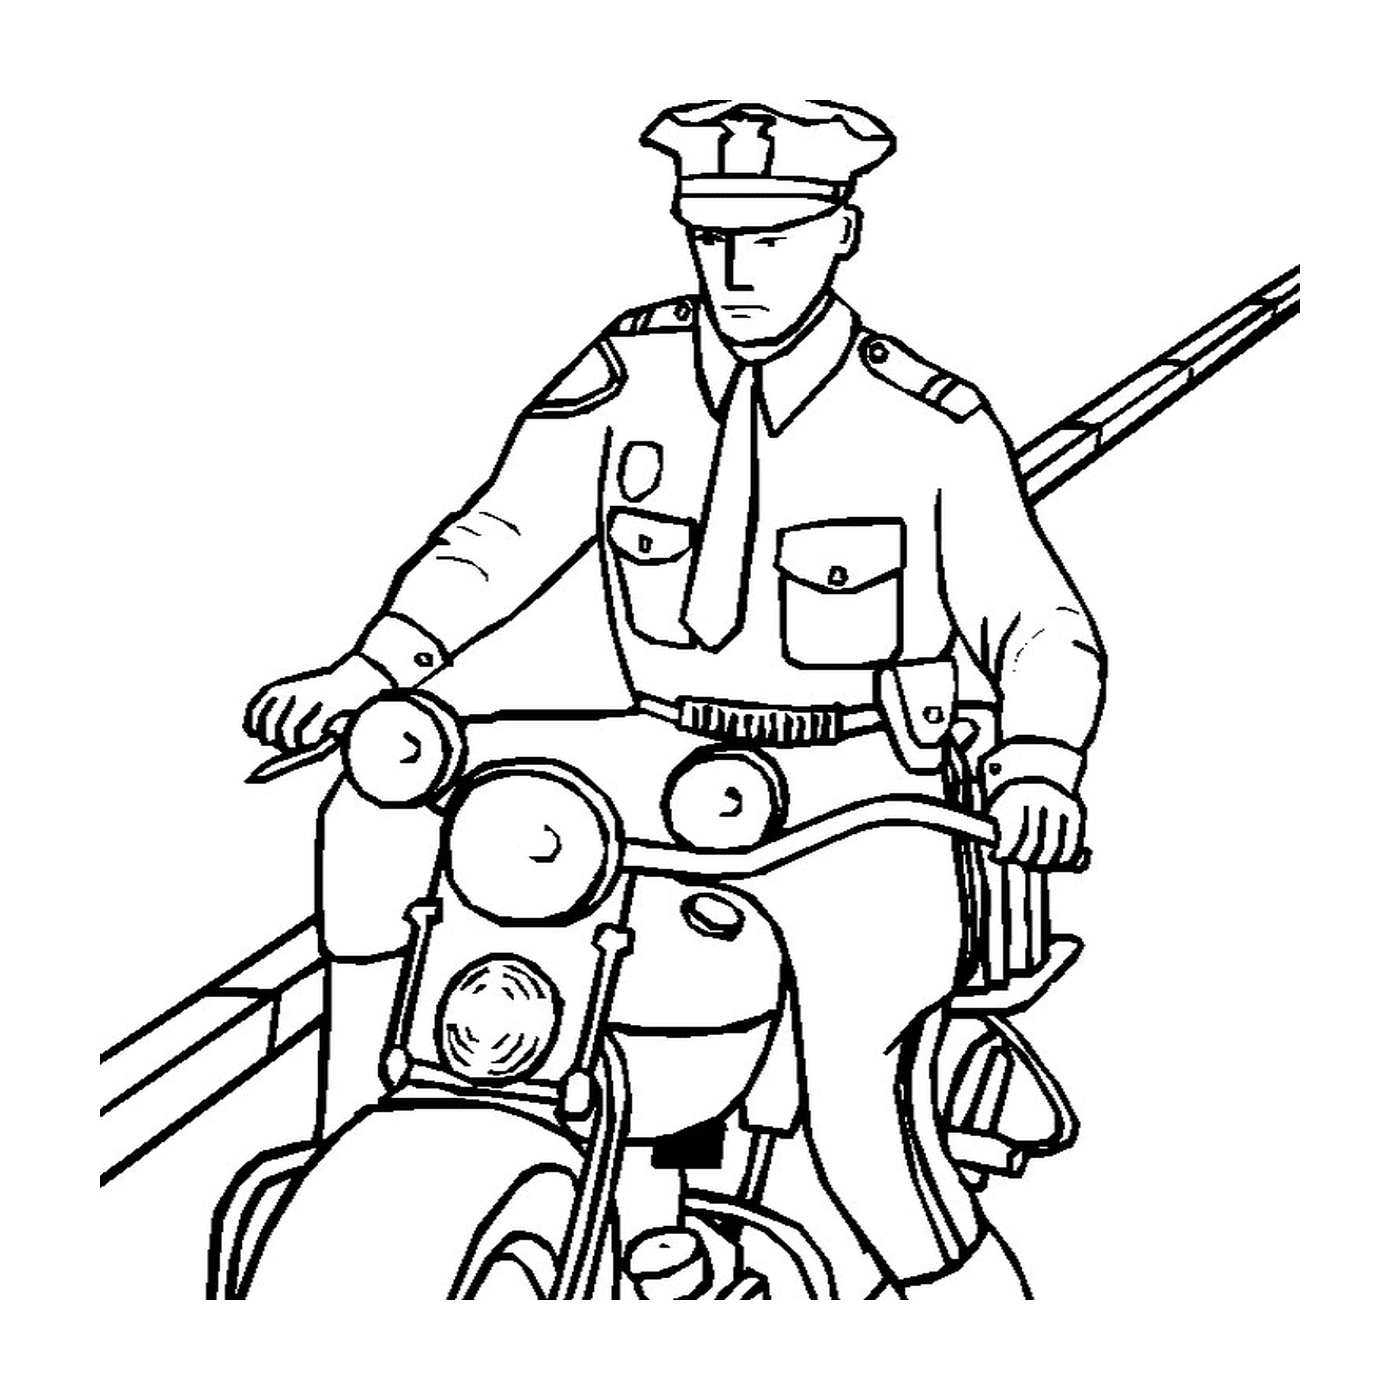  Быстрый полицейский мотоцикл 